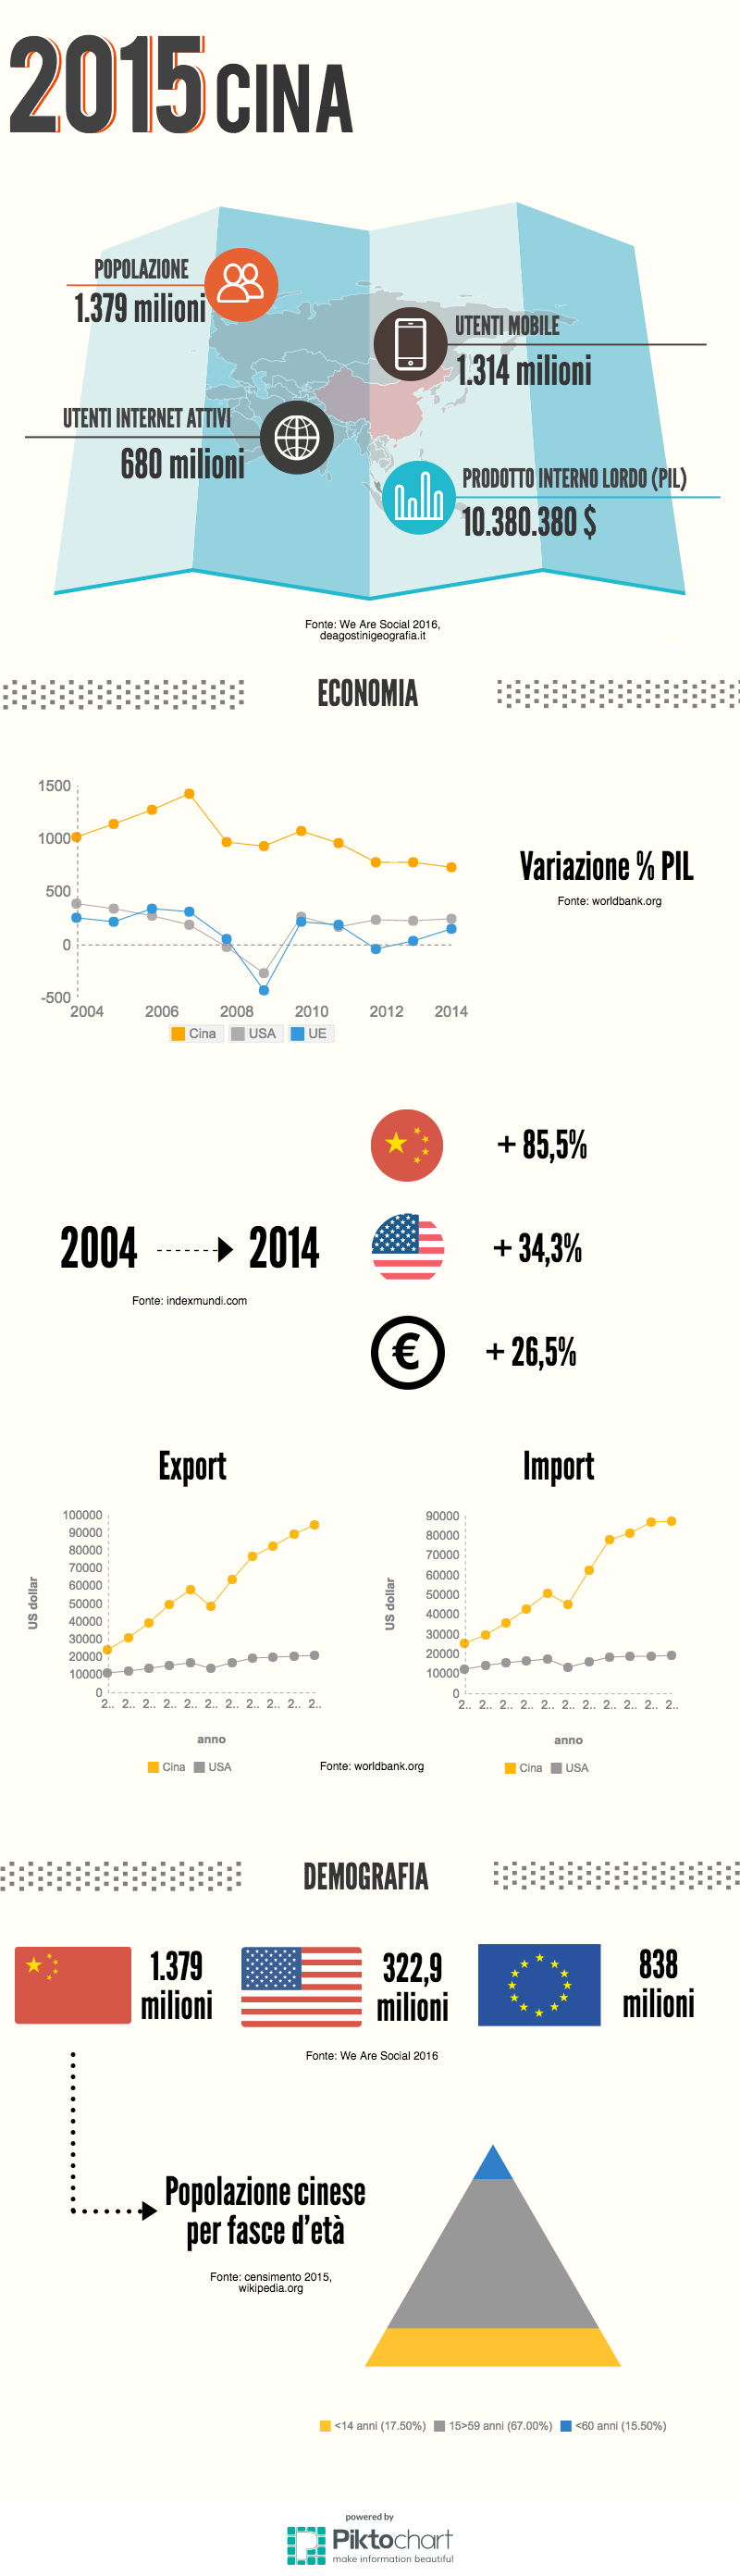 Il 2015 in Cina: un'infografica di comunicazione e social